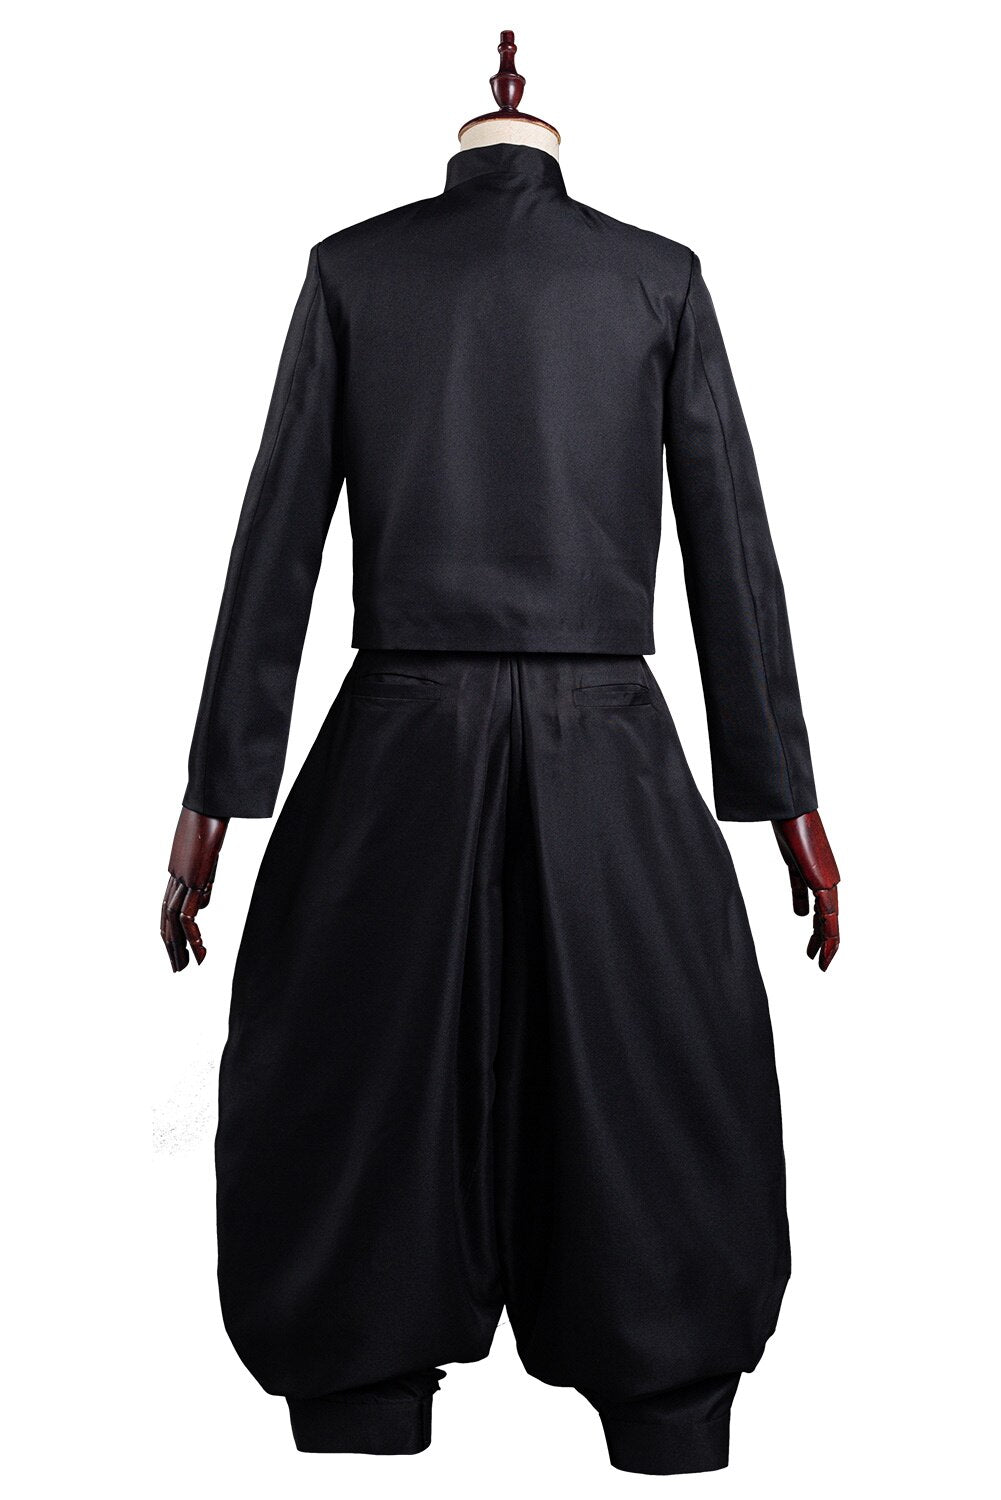 Jujutsu Kaisen: Suguru Geto Cosplay Costume